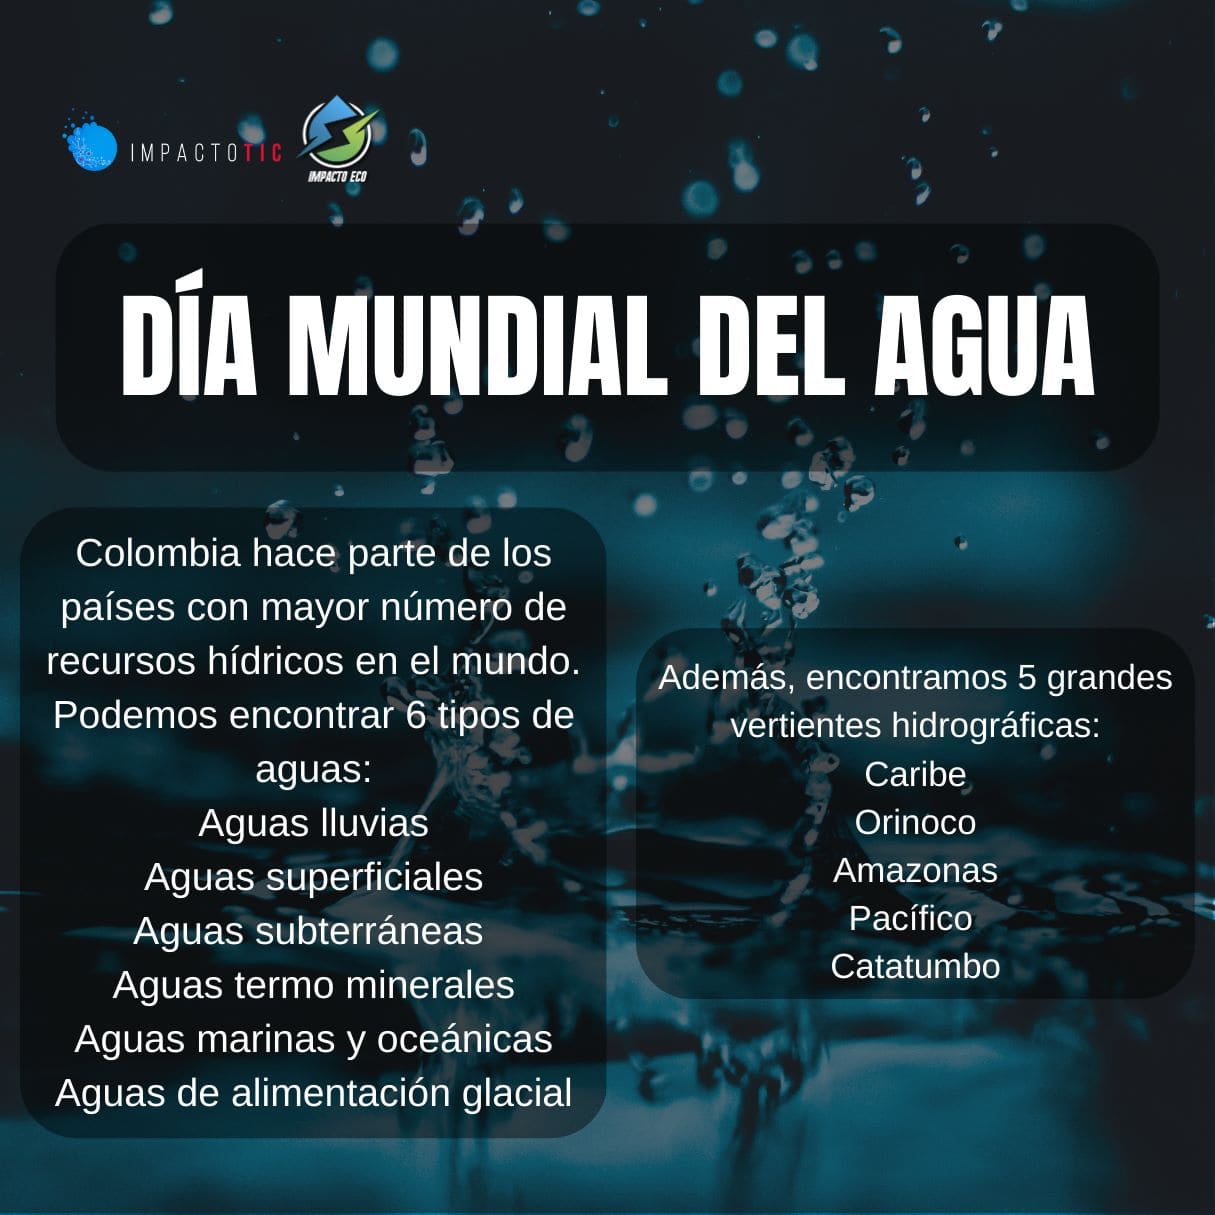 Dia mundial del agua 1